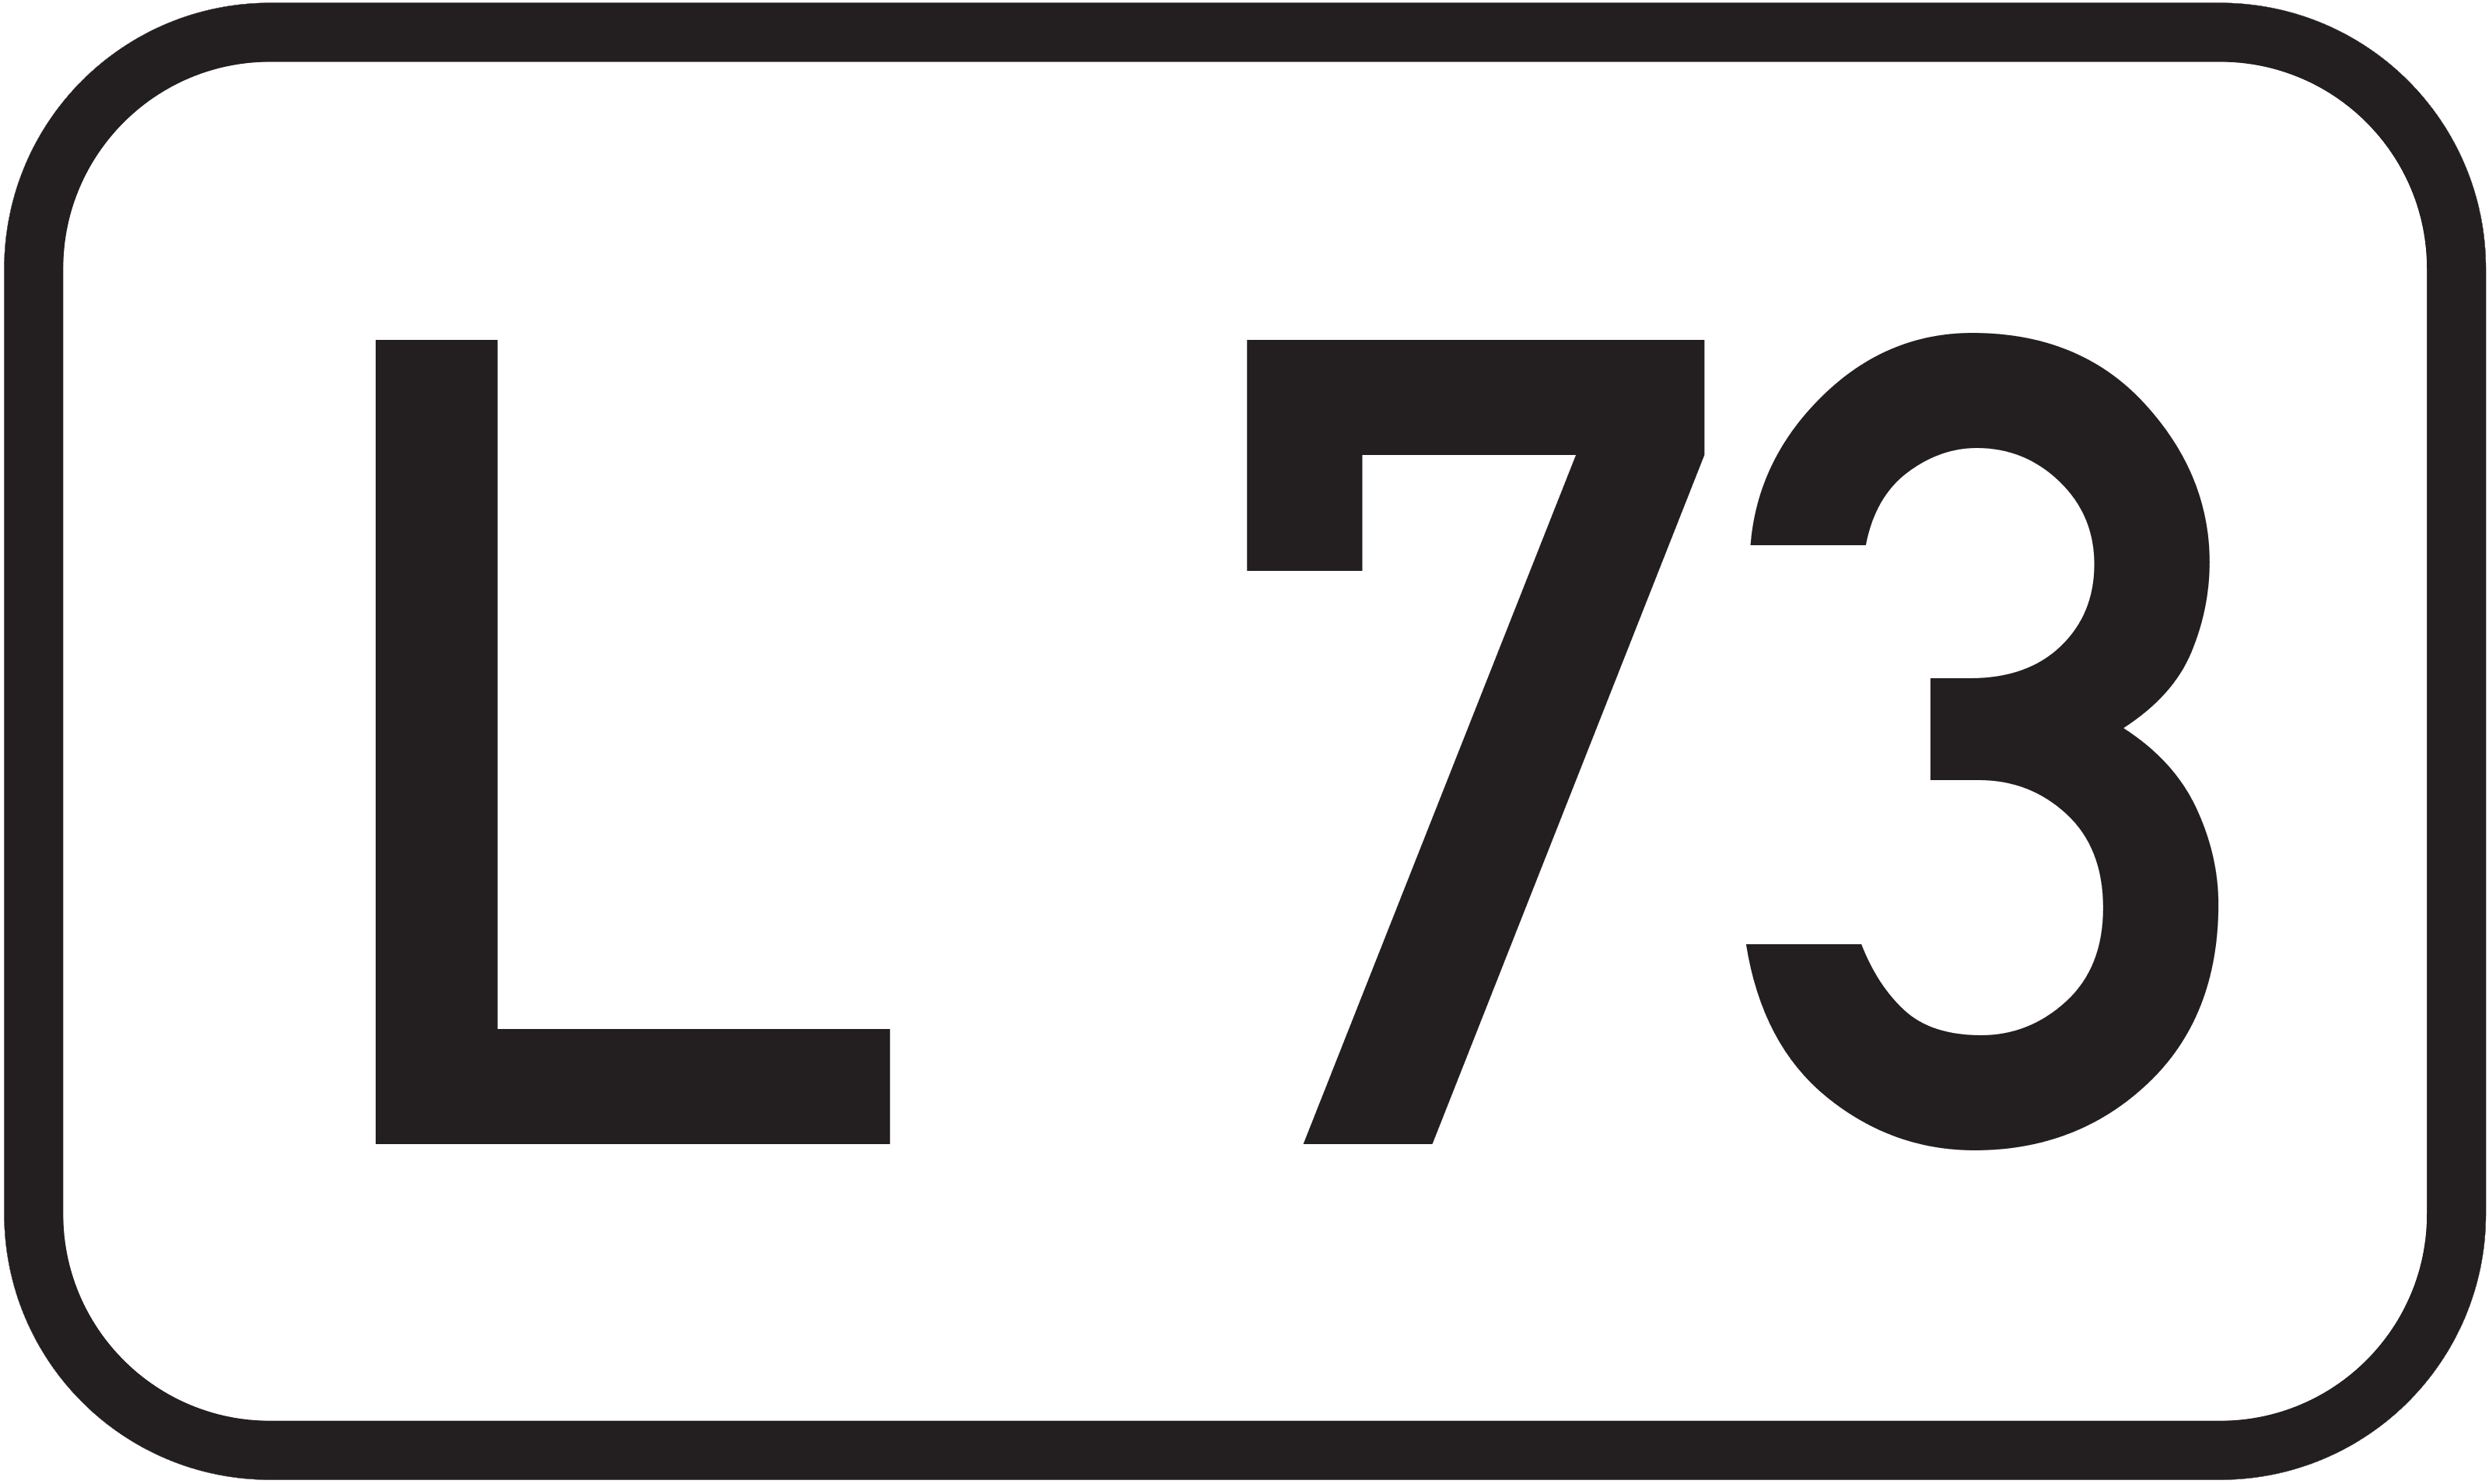 Landesstraße L 73